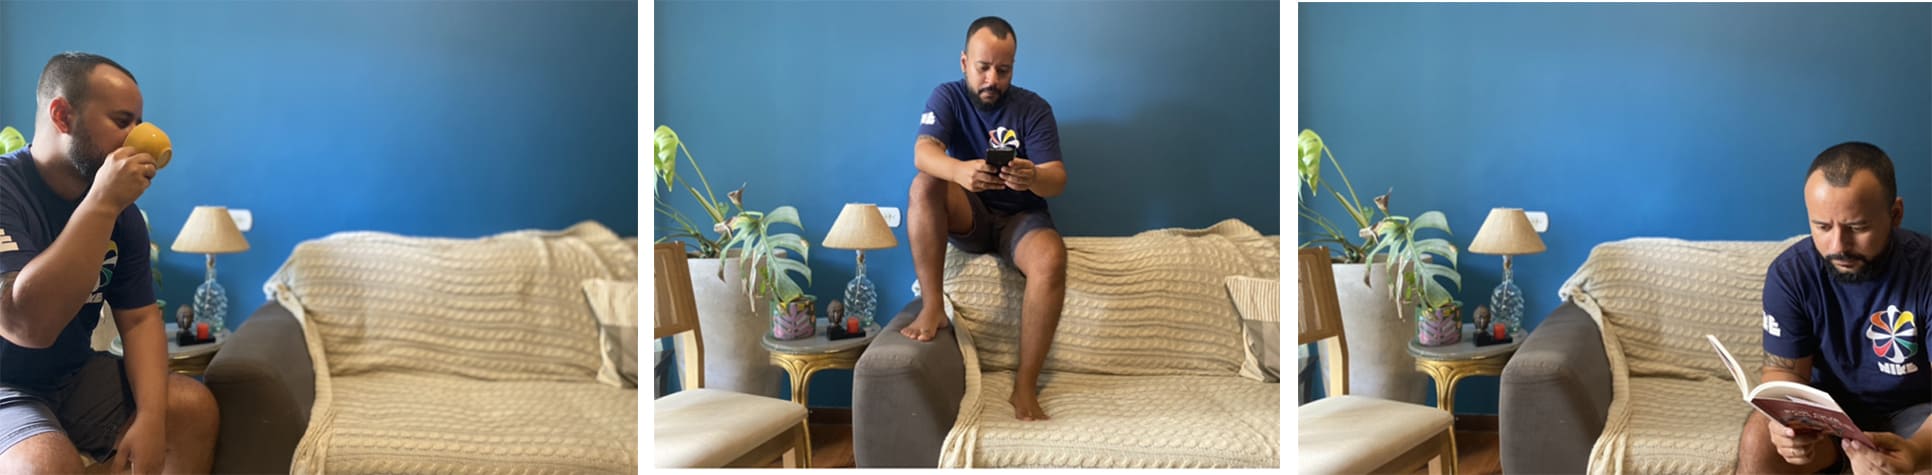 Três imagens de uma sala com uma parede azul. Foto 1 - homem sentado em uma cadeira do lado esquerdo tomando um café; 2- homem sentado em cima do sofá no meio vendo celular; 3- homem sentado no sofá do lado esquerdo lendo um livro.